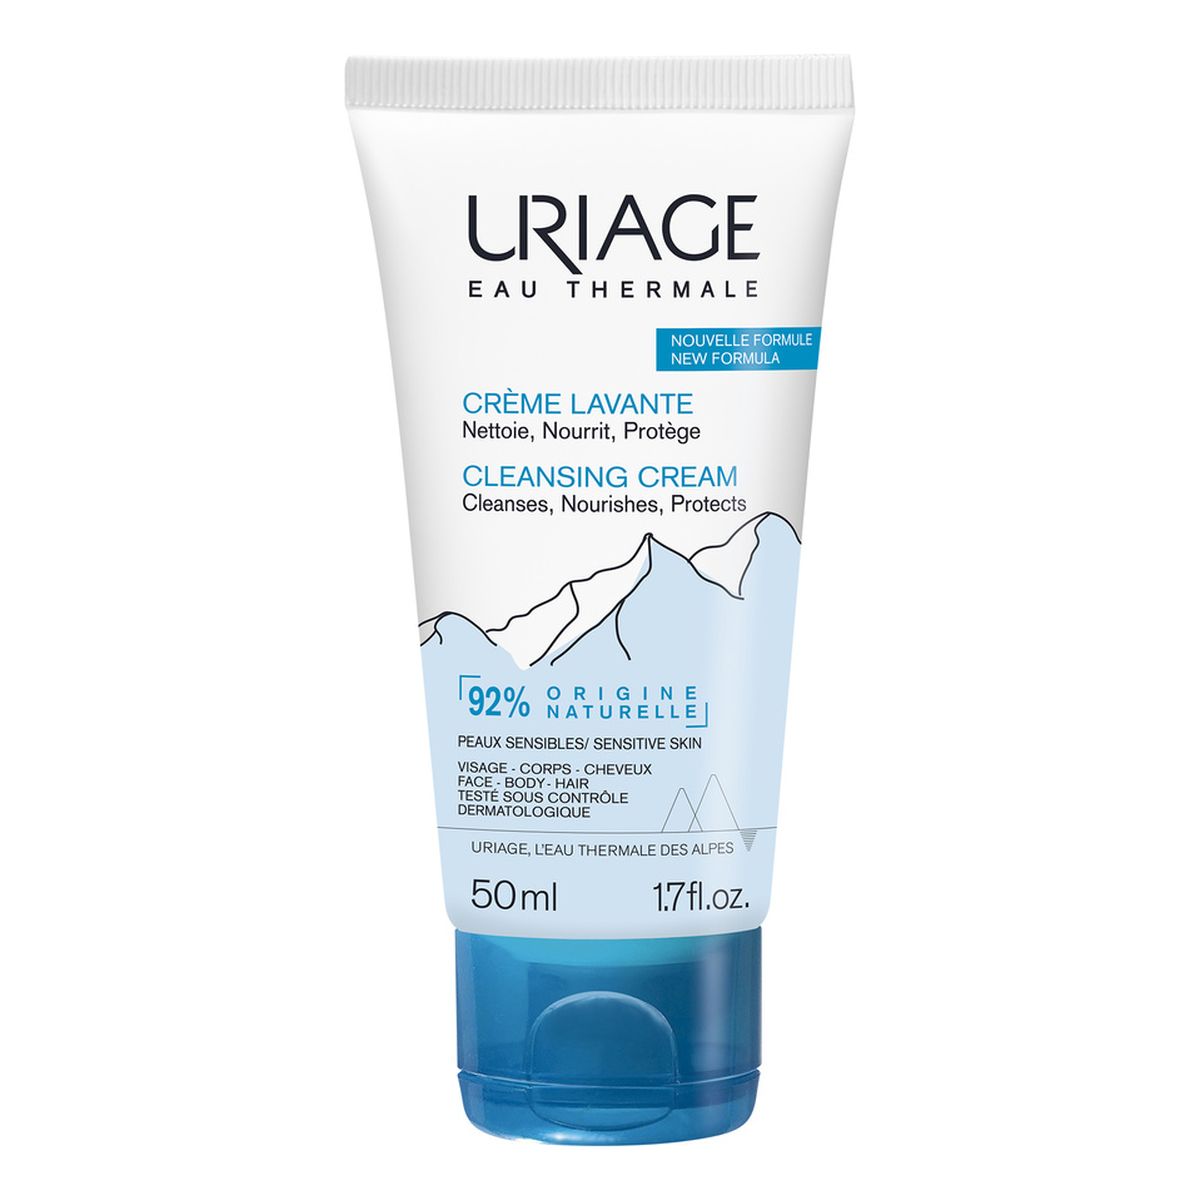 Uriage Eau Thermale Cleansing Cream Kremowy żel oczyszczający 50ml